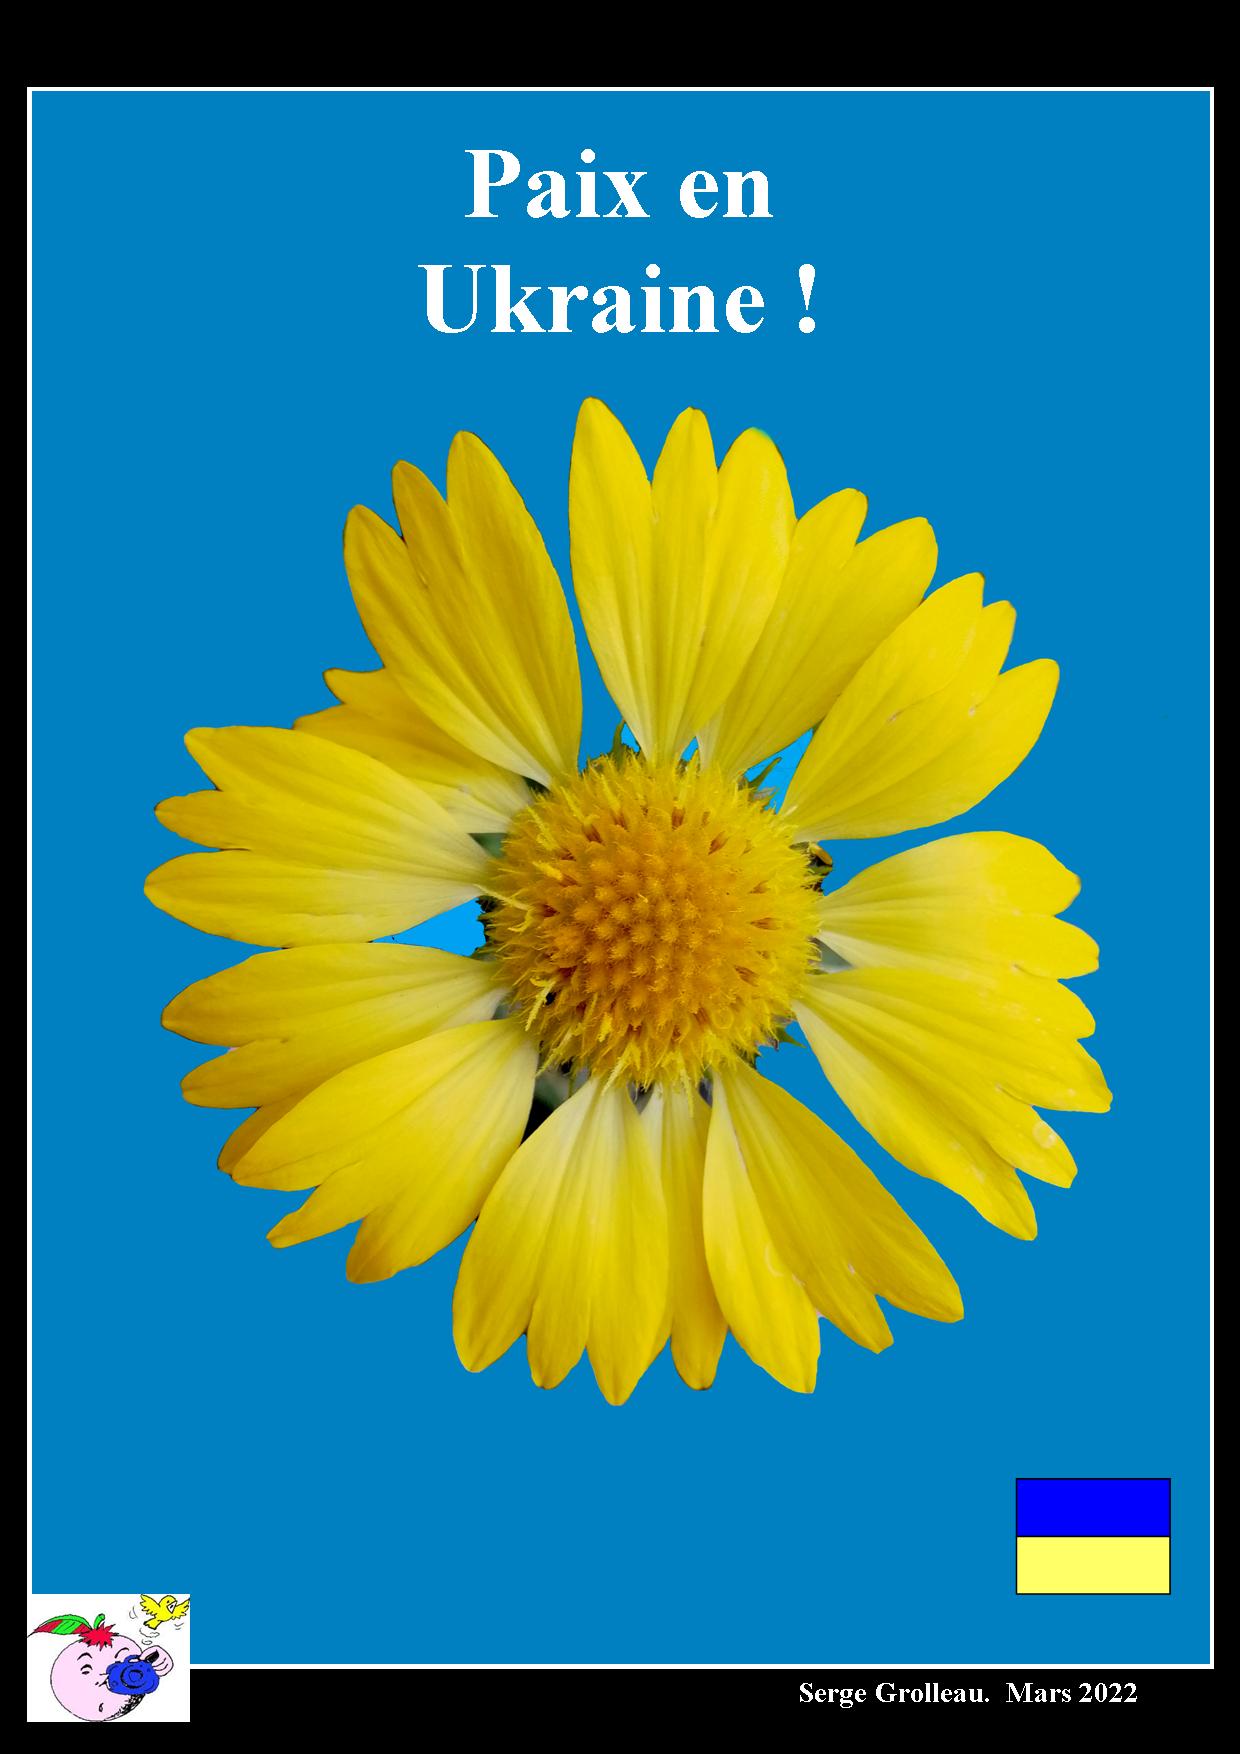 Paix pour Ukraine.jpg